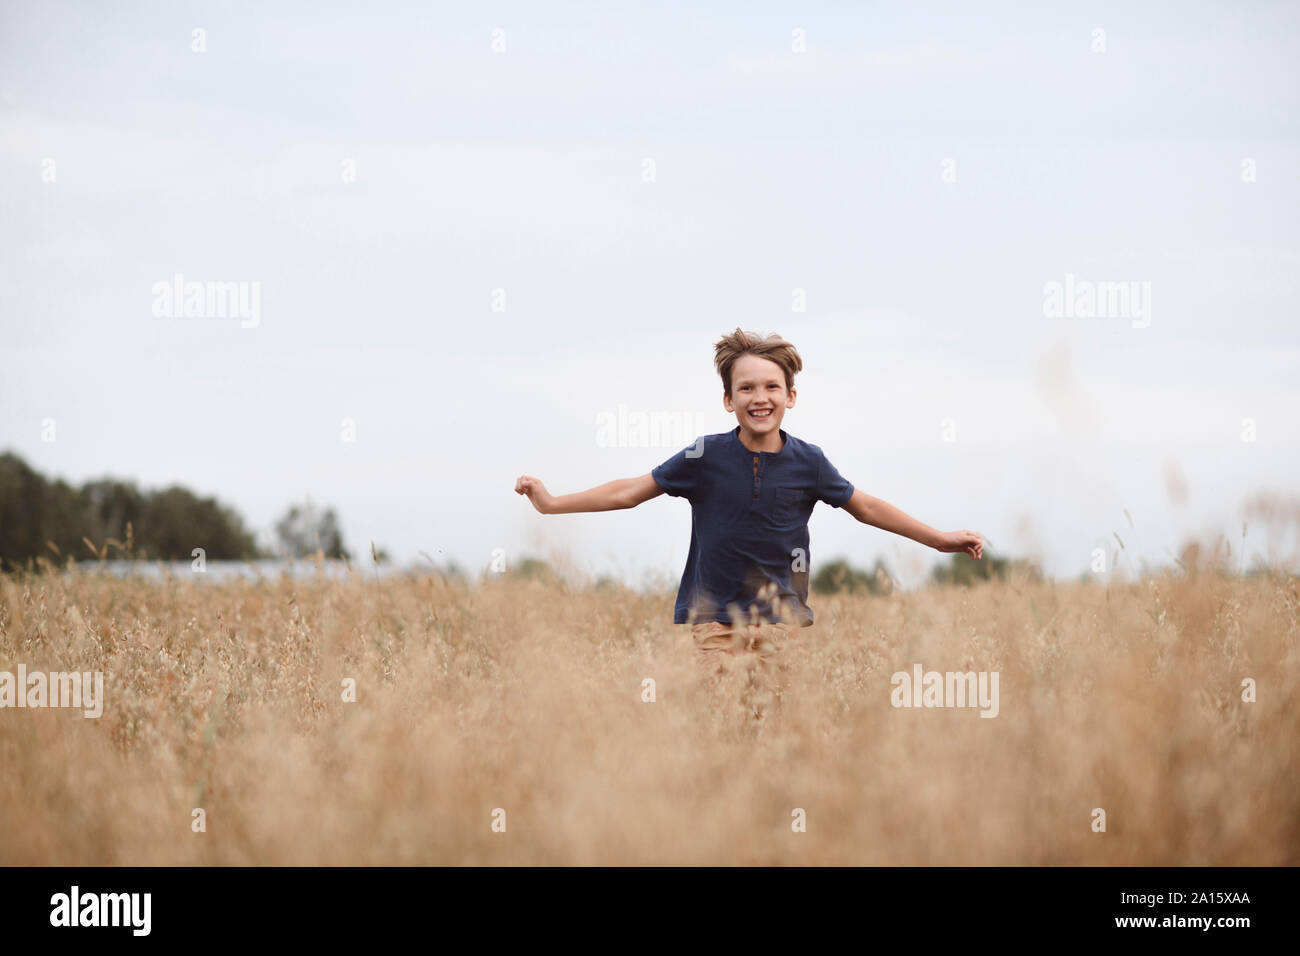 Retrato de risa niño corriendo en un campo de avena Foto de stock